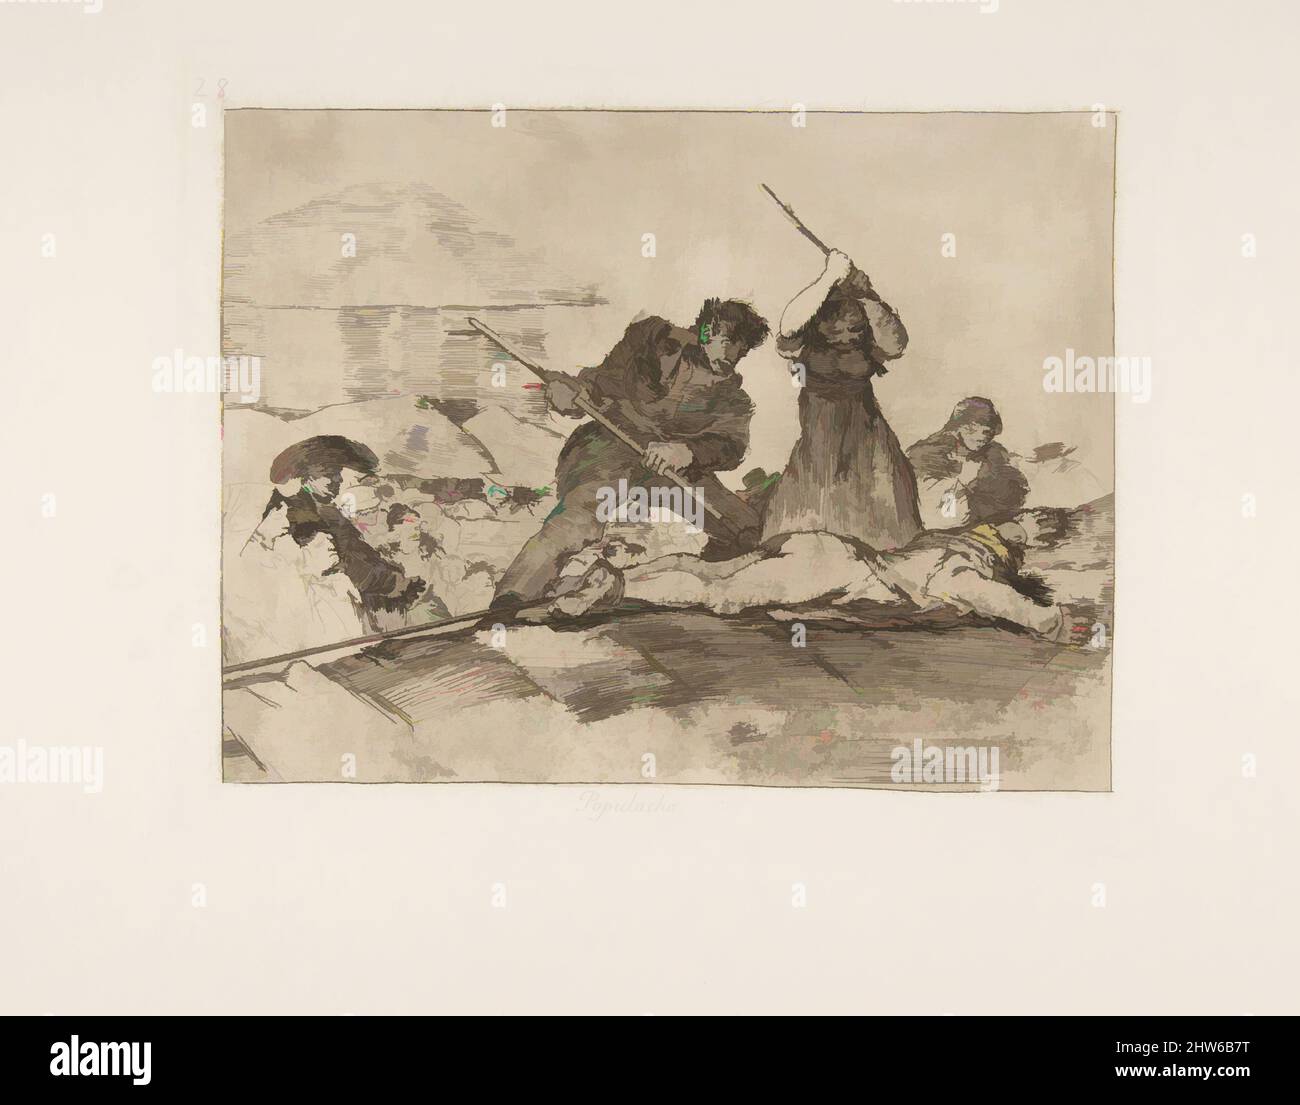 Art inspiré par la planche 28 de 'les désastres de la guerre' (Los Desastres de la Guerra): 'Rabble' (Populacho), 1810 (publié en 1863), Etching, lavis, Drypoint, burin et burnisher, plaque : 7 3/16 × 8 7/16 in. (18,2 × 21,4 cm), Prints, Goya (Francisco de Goya y Lucientes) (Espagnol, Fuendetodos, oeuvres classiques modernisées par Artotop avec une touche de modernité. Formes, couleur et valeur, impact visuel accrocheur sur l'art émotions par la liberté d'œuvres d'art d'une manière contemporaine. Un message intemporel qui cherche une nouvelle direction créative. Artistes qui se tournent vers le support numérique et créent le NFT Artotop Banque D'Images